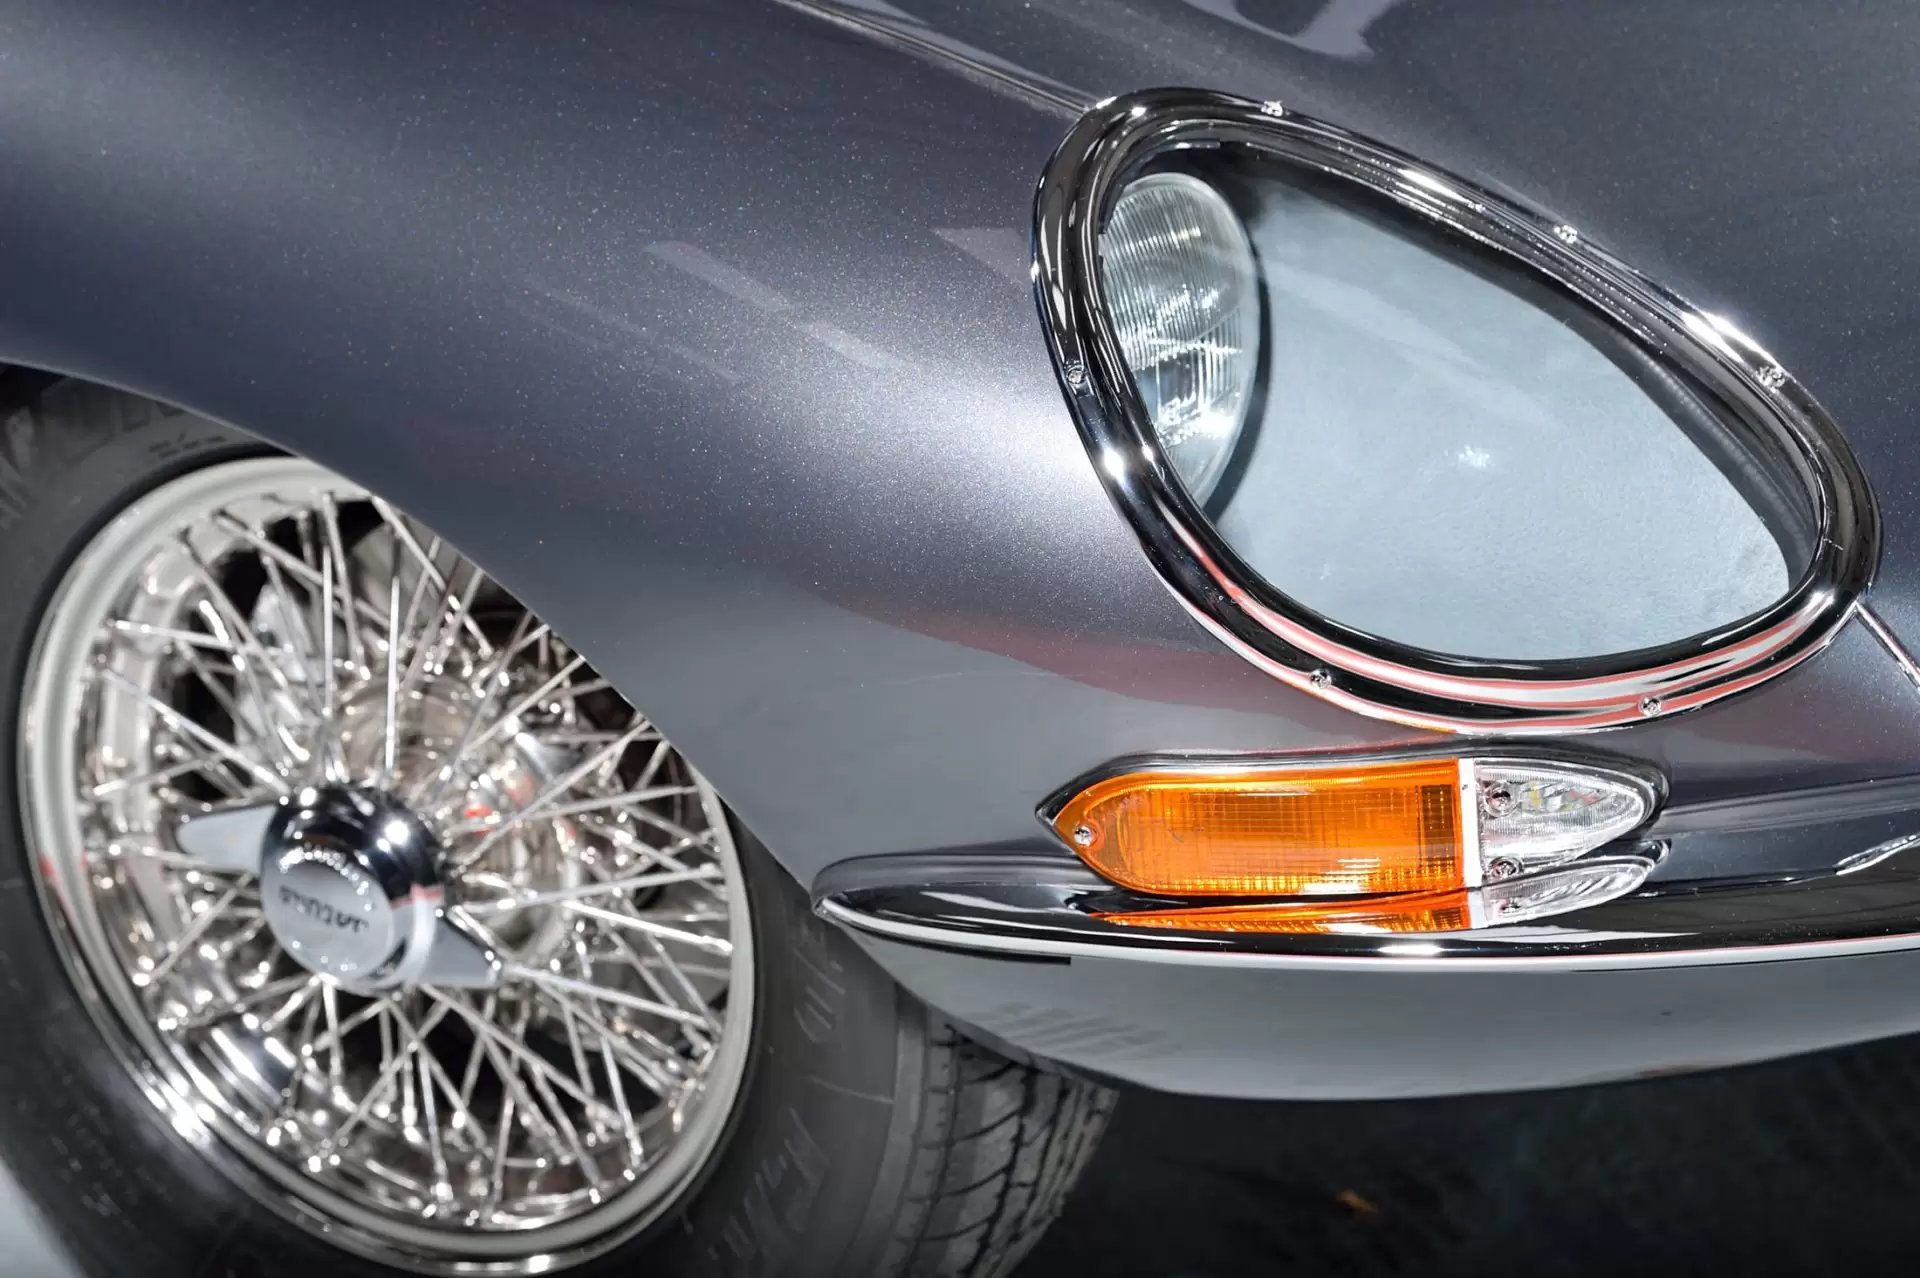 Front headlight of Jaguar classic car